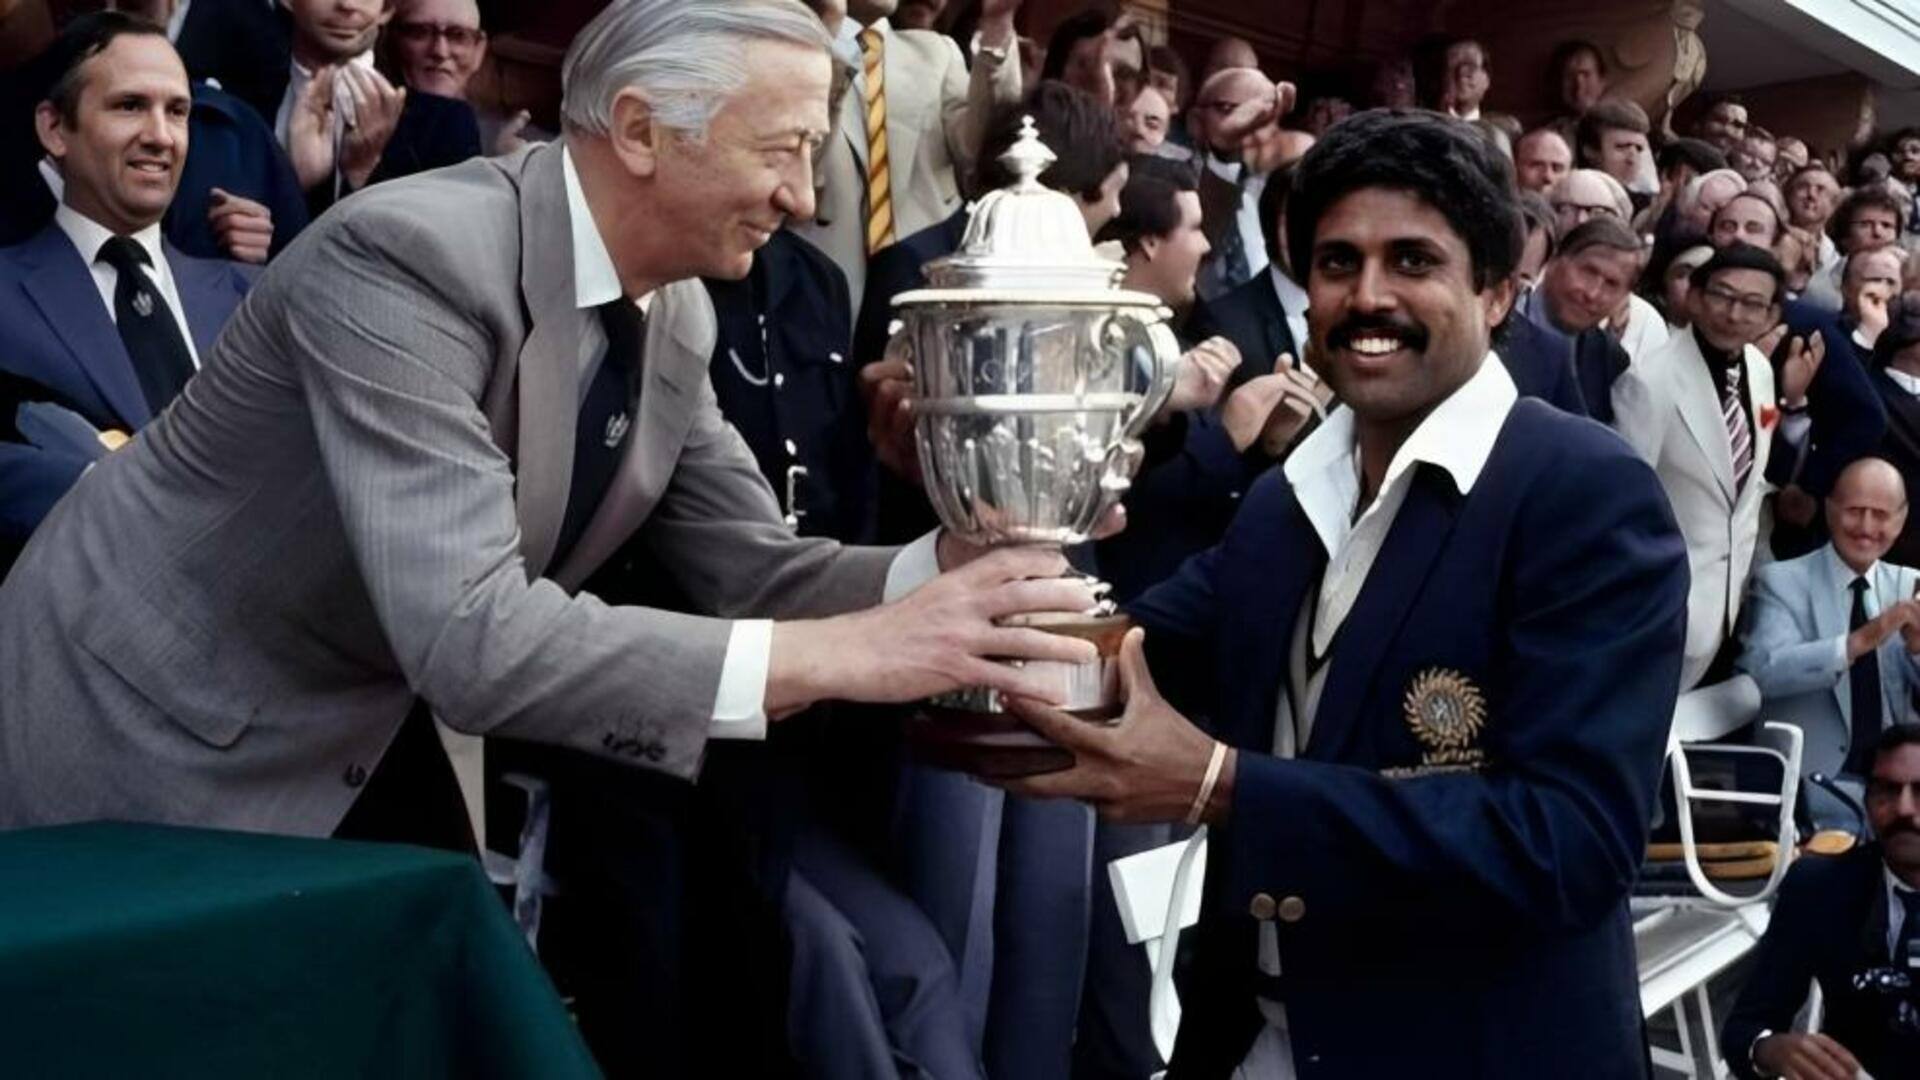 இதே நாளில் அன்று : 1983இல் ஒருநாள் உலகக்கோப்பையை வென்று சாதனை படைத்த இந்தியா